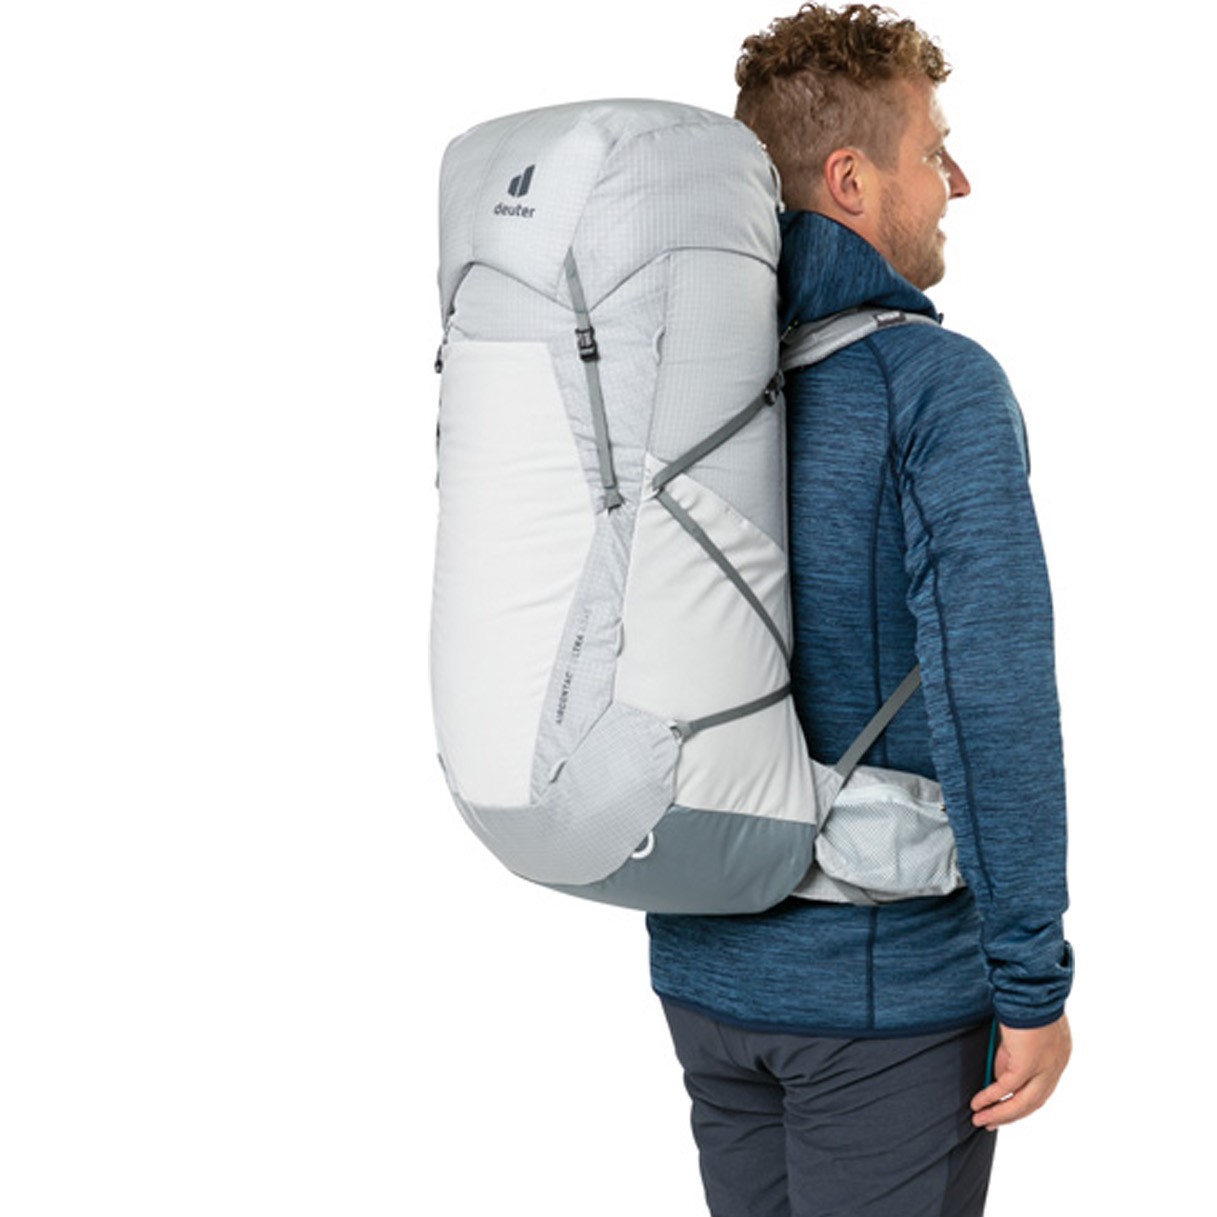 Deuter Aircontact Ultra 50+5 Trekking Backpack